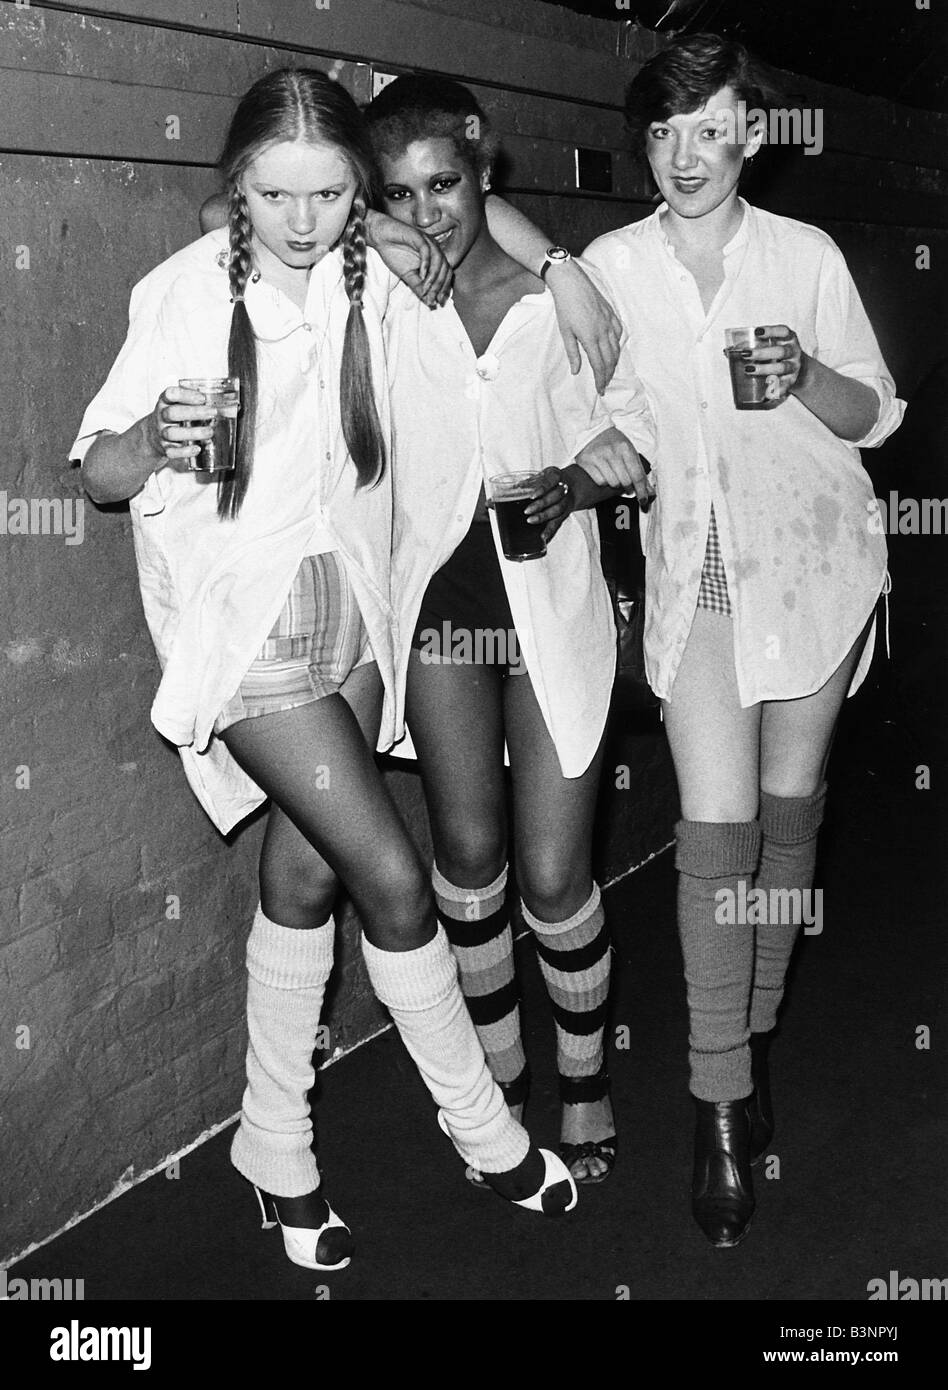 Punk Rocker les filles à lunettes disco holding beer 1976 Banque D'Images